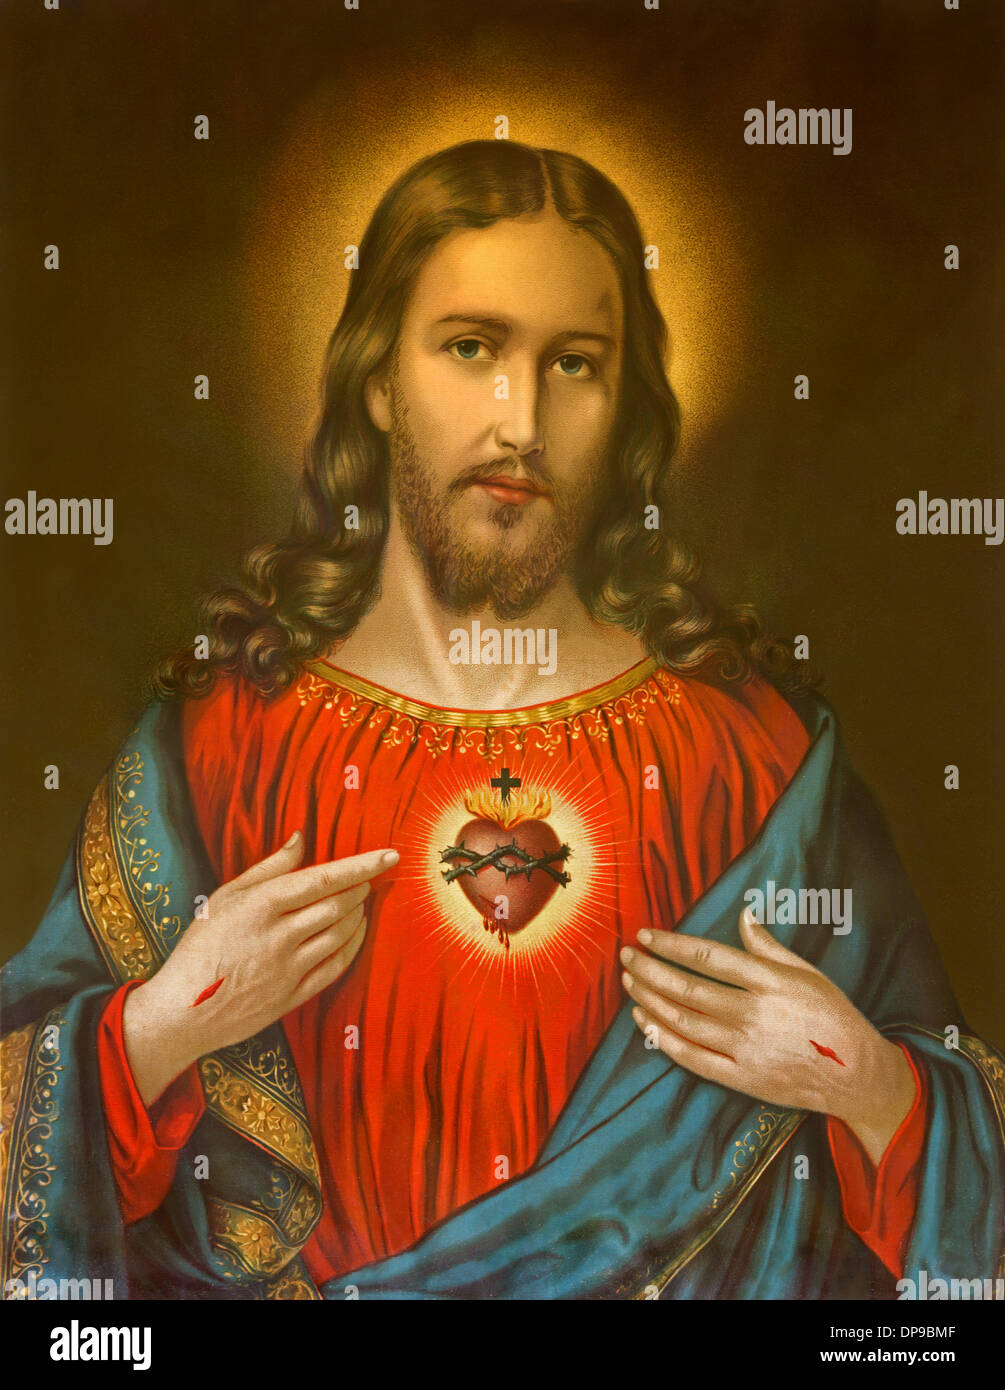 Alemania 1899: Copia de la típica imagen católica del corazón de Jesucristo desde Eslovaquia impreso el 19 de abril de 1899 en Alemania. Foto de stock